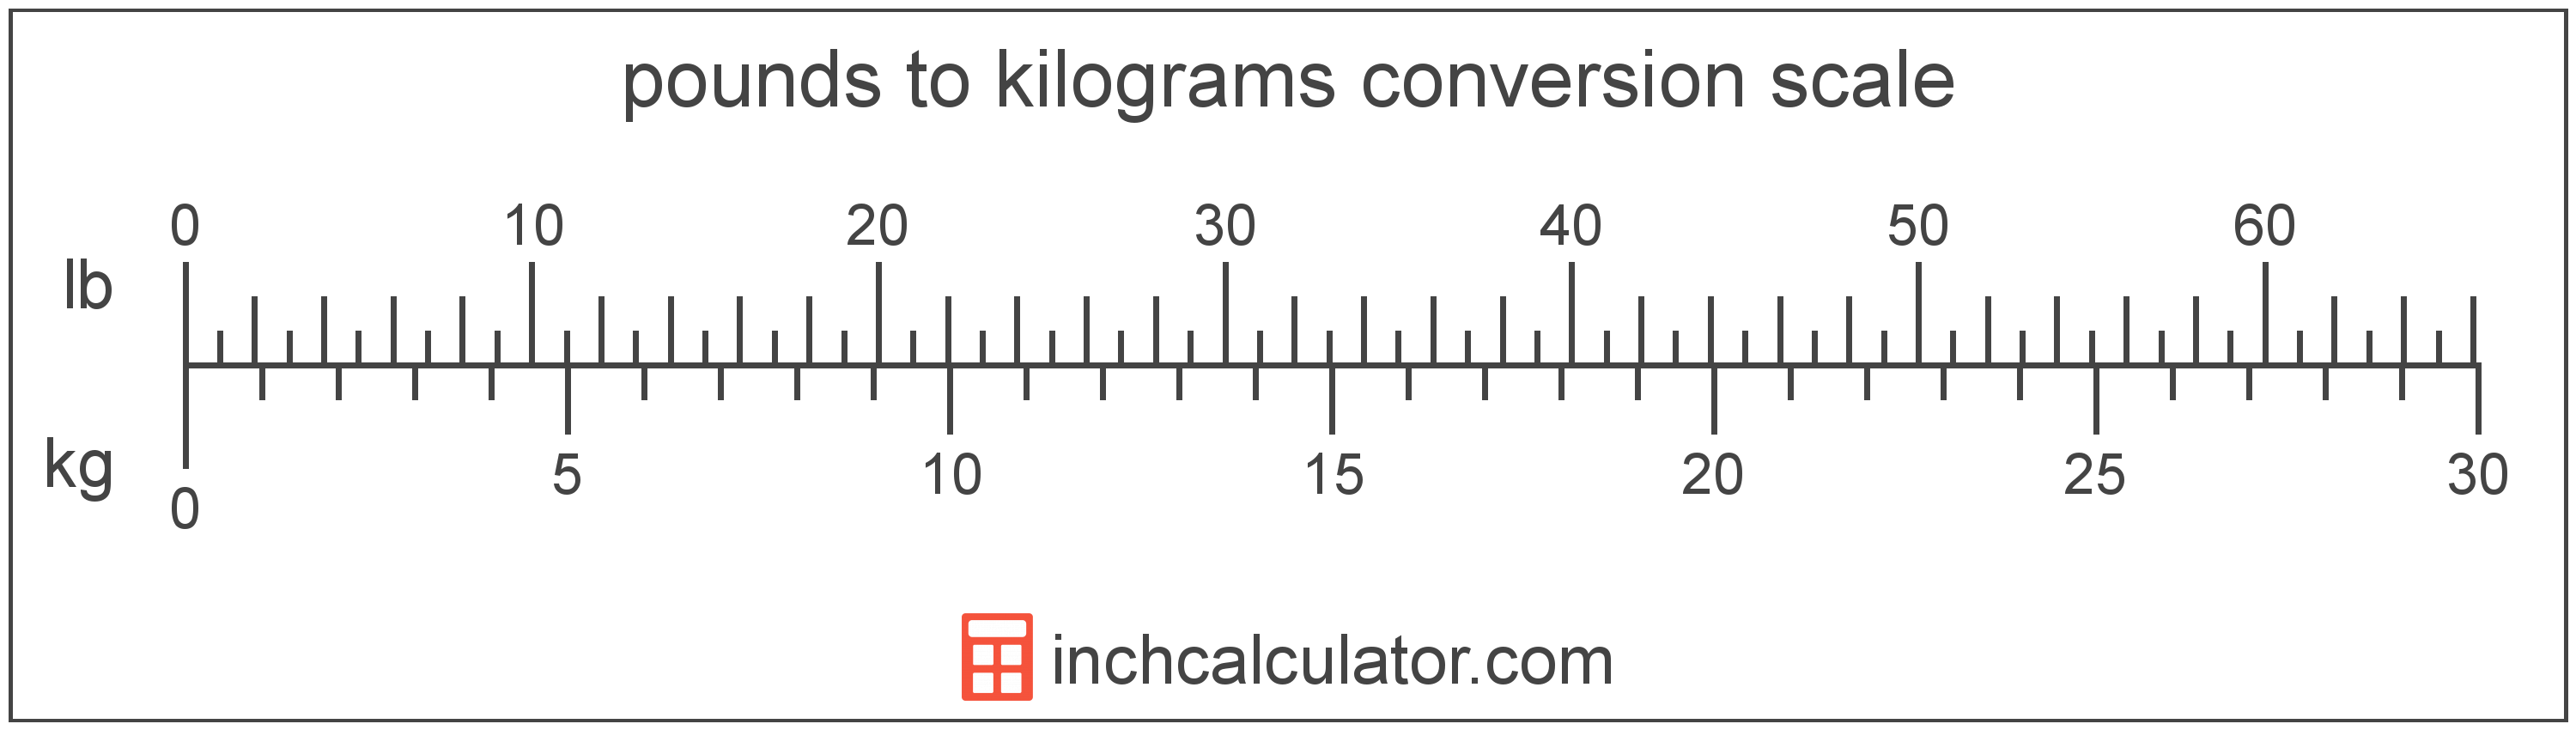 kilogram pound conversion calculator